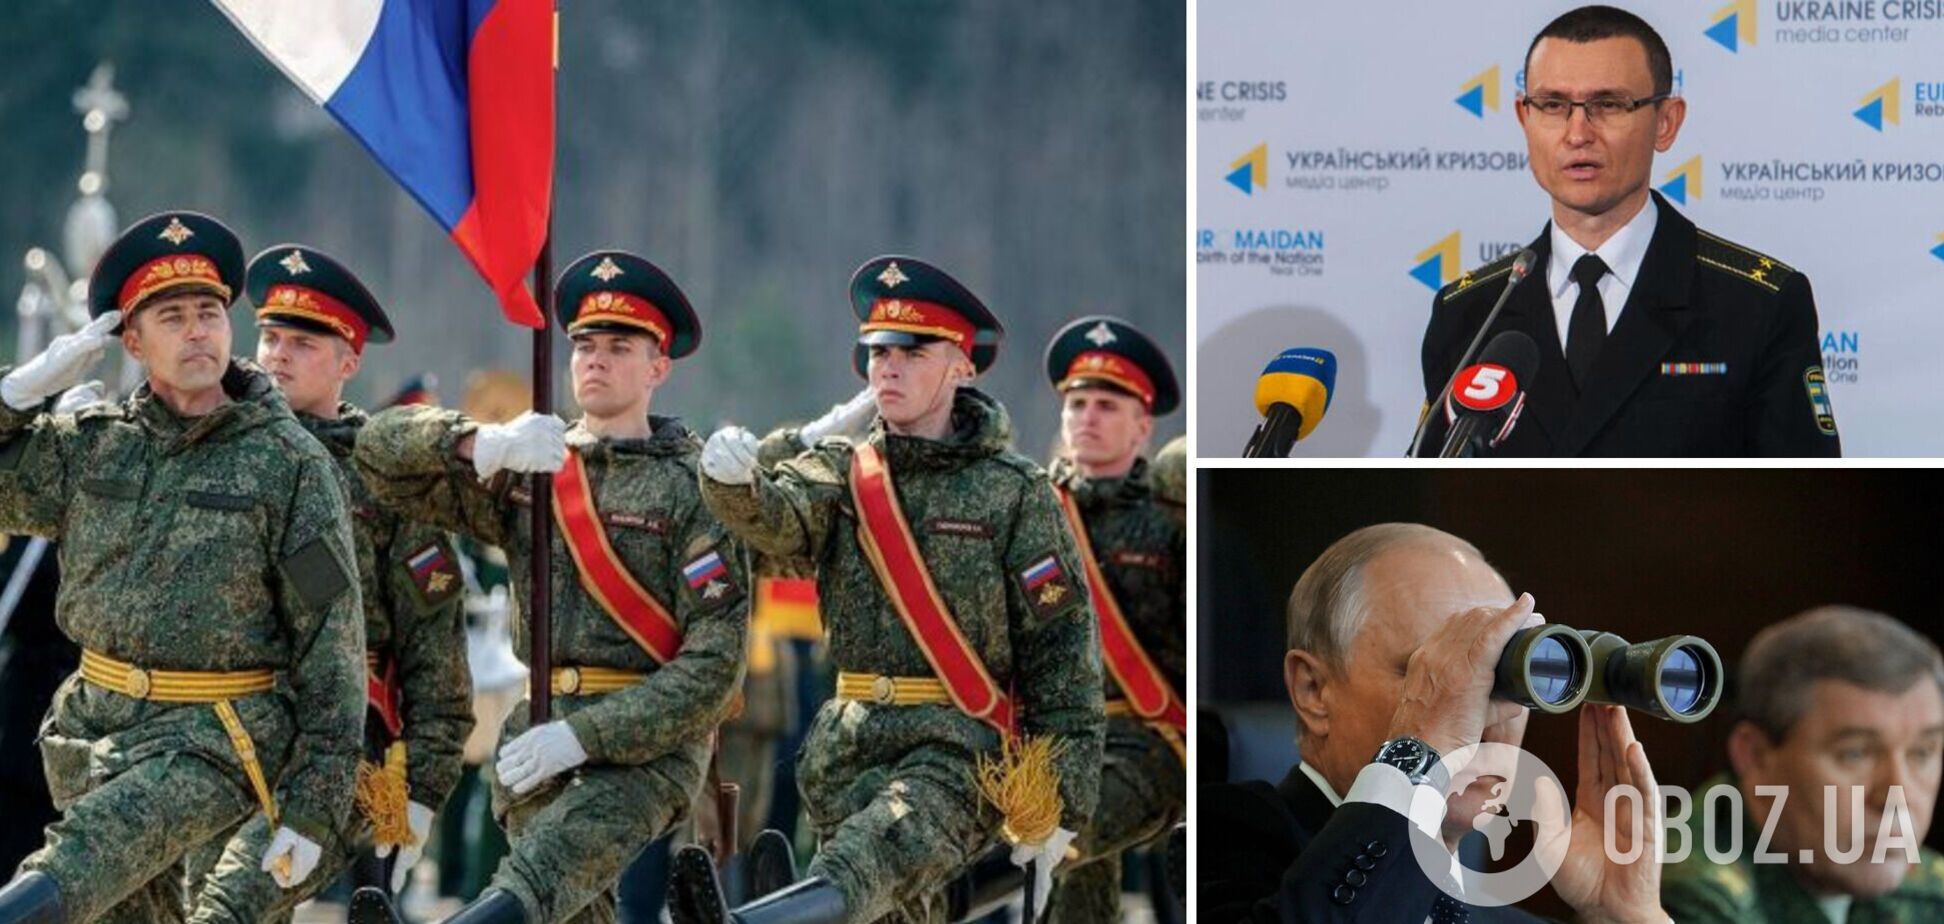 Селезнев: Путин намерен бросить в Украину миллионы солдат, но к наступлению не готов. Интервью